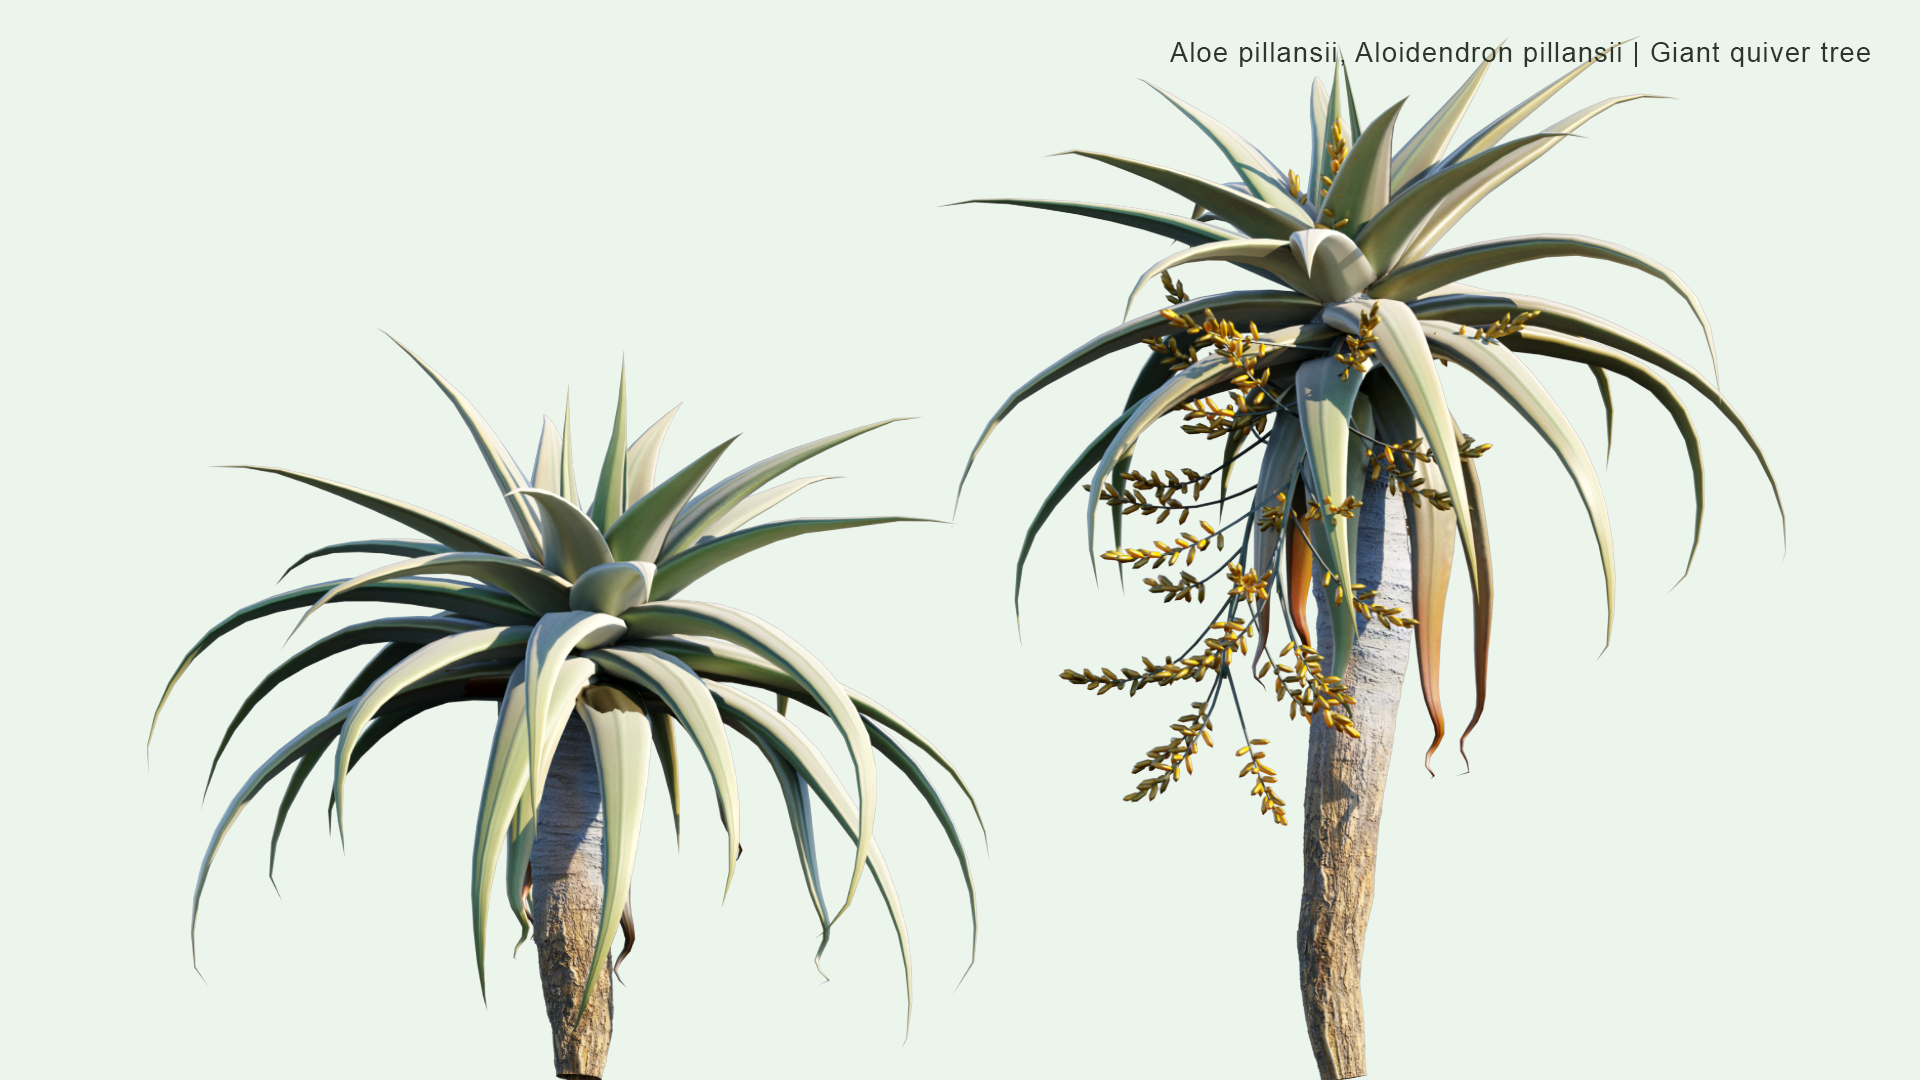 2D Aloe Pillansii, Aloidendron Pillansii - Giant Quiver Tree, Bastard Quiver Tree